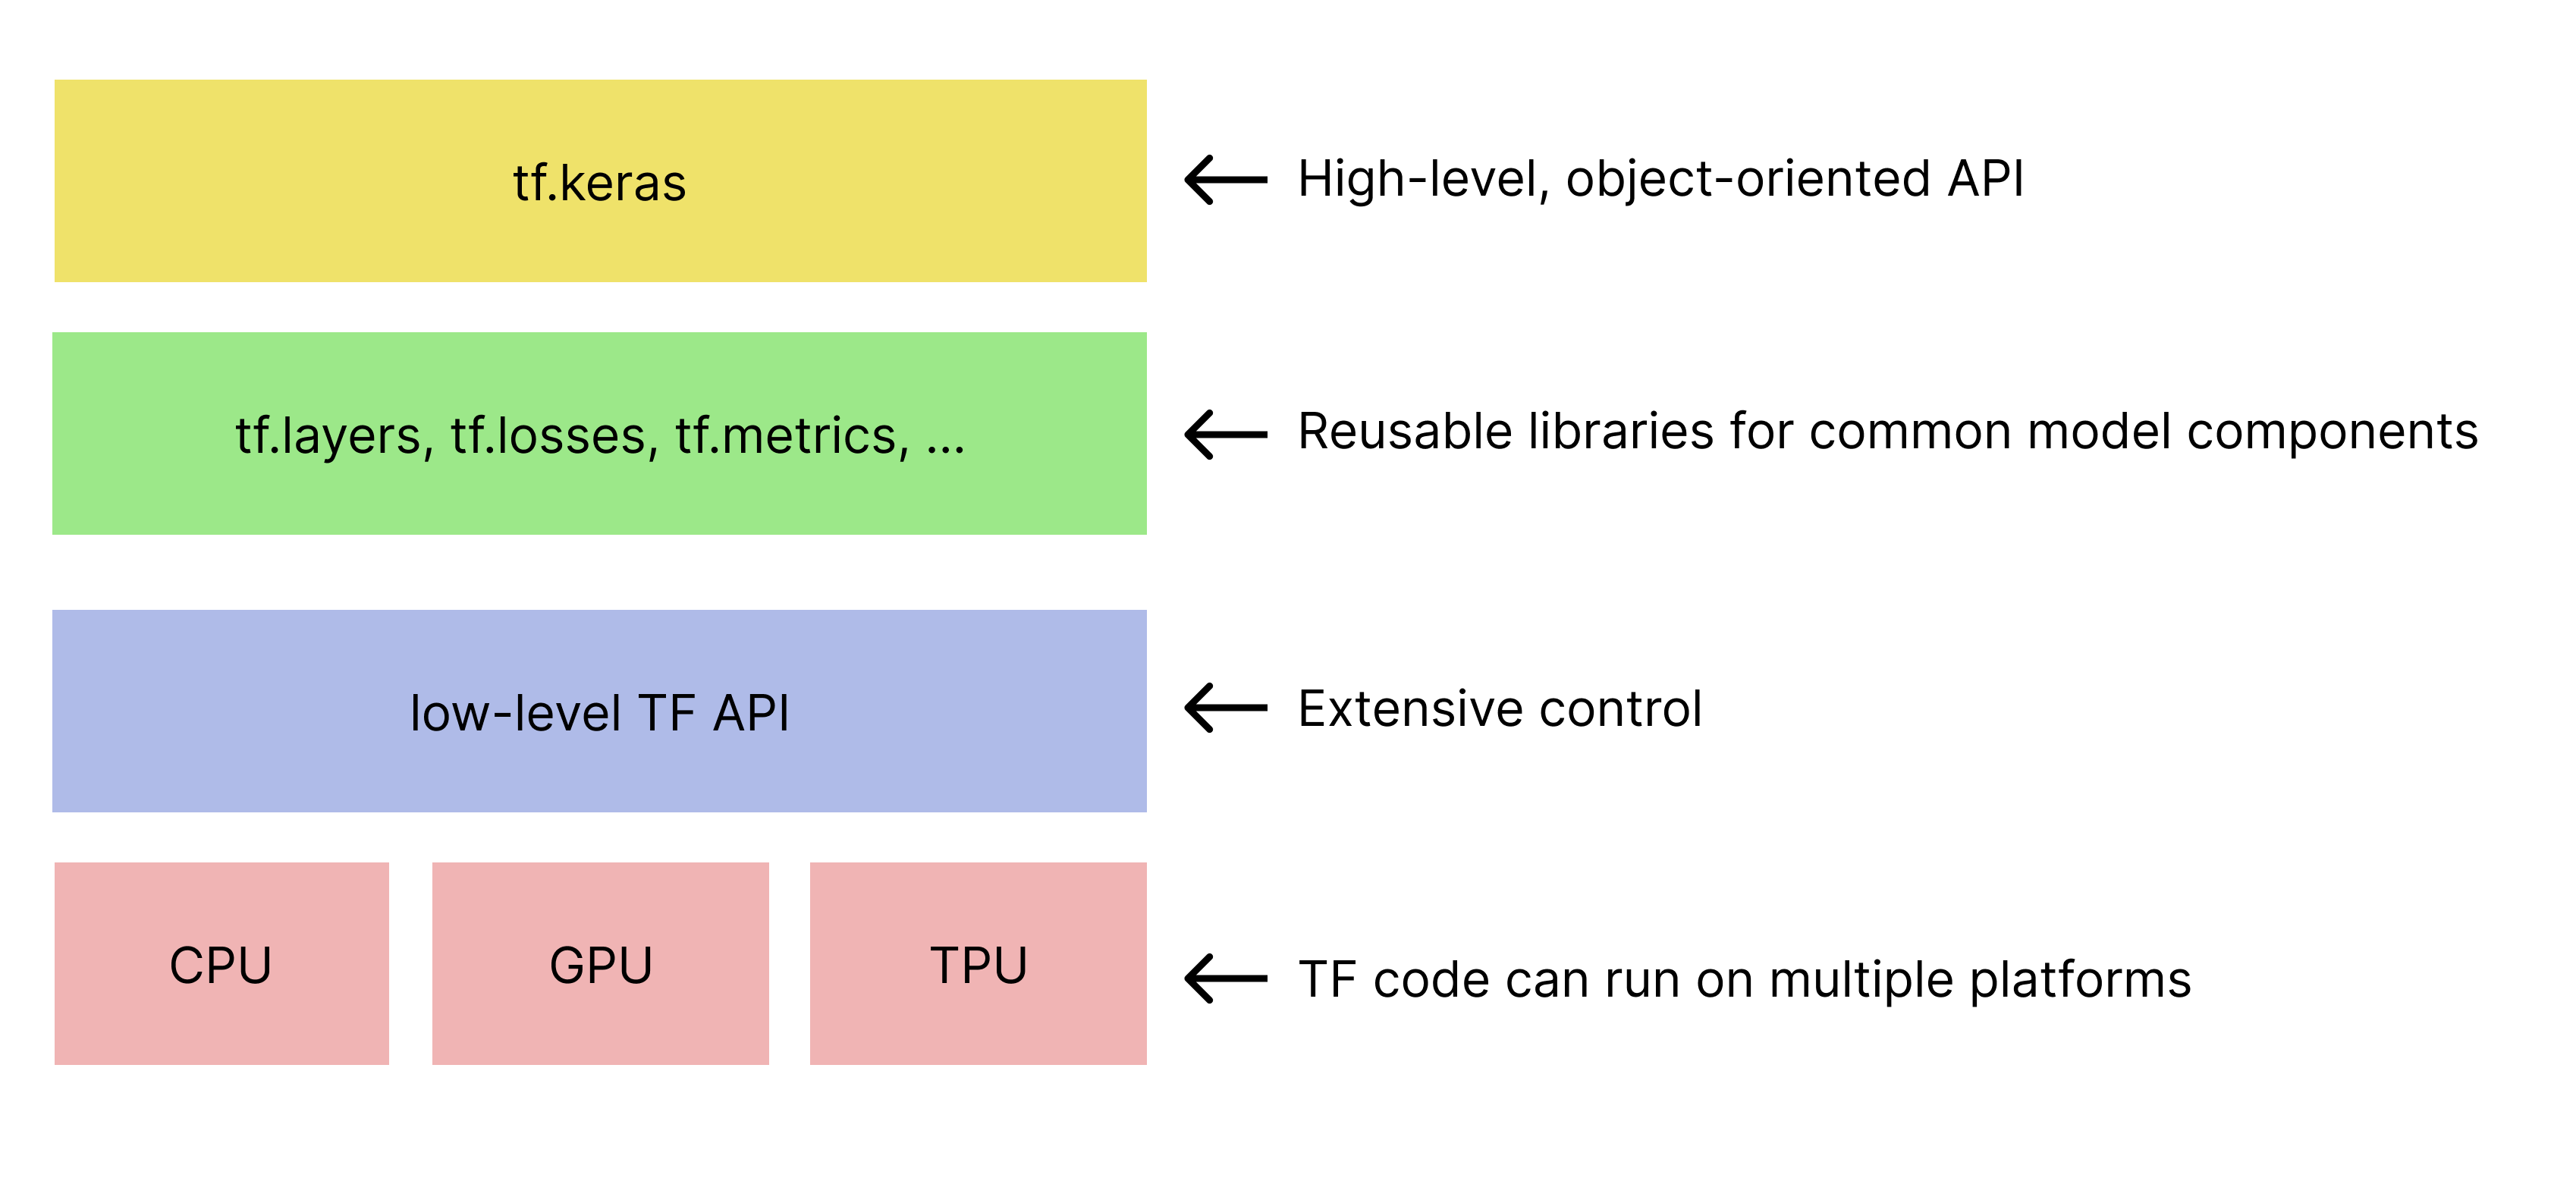 Hệ thống phân cấp đơn giản của bộ công cụ TensorFlow. 
   API tf.keras nằm ở trên cùng.